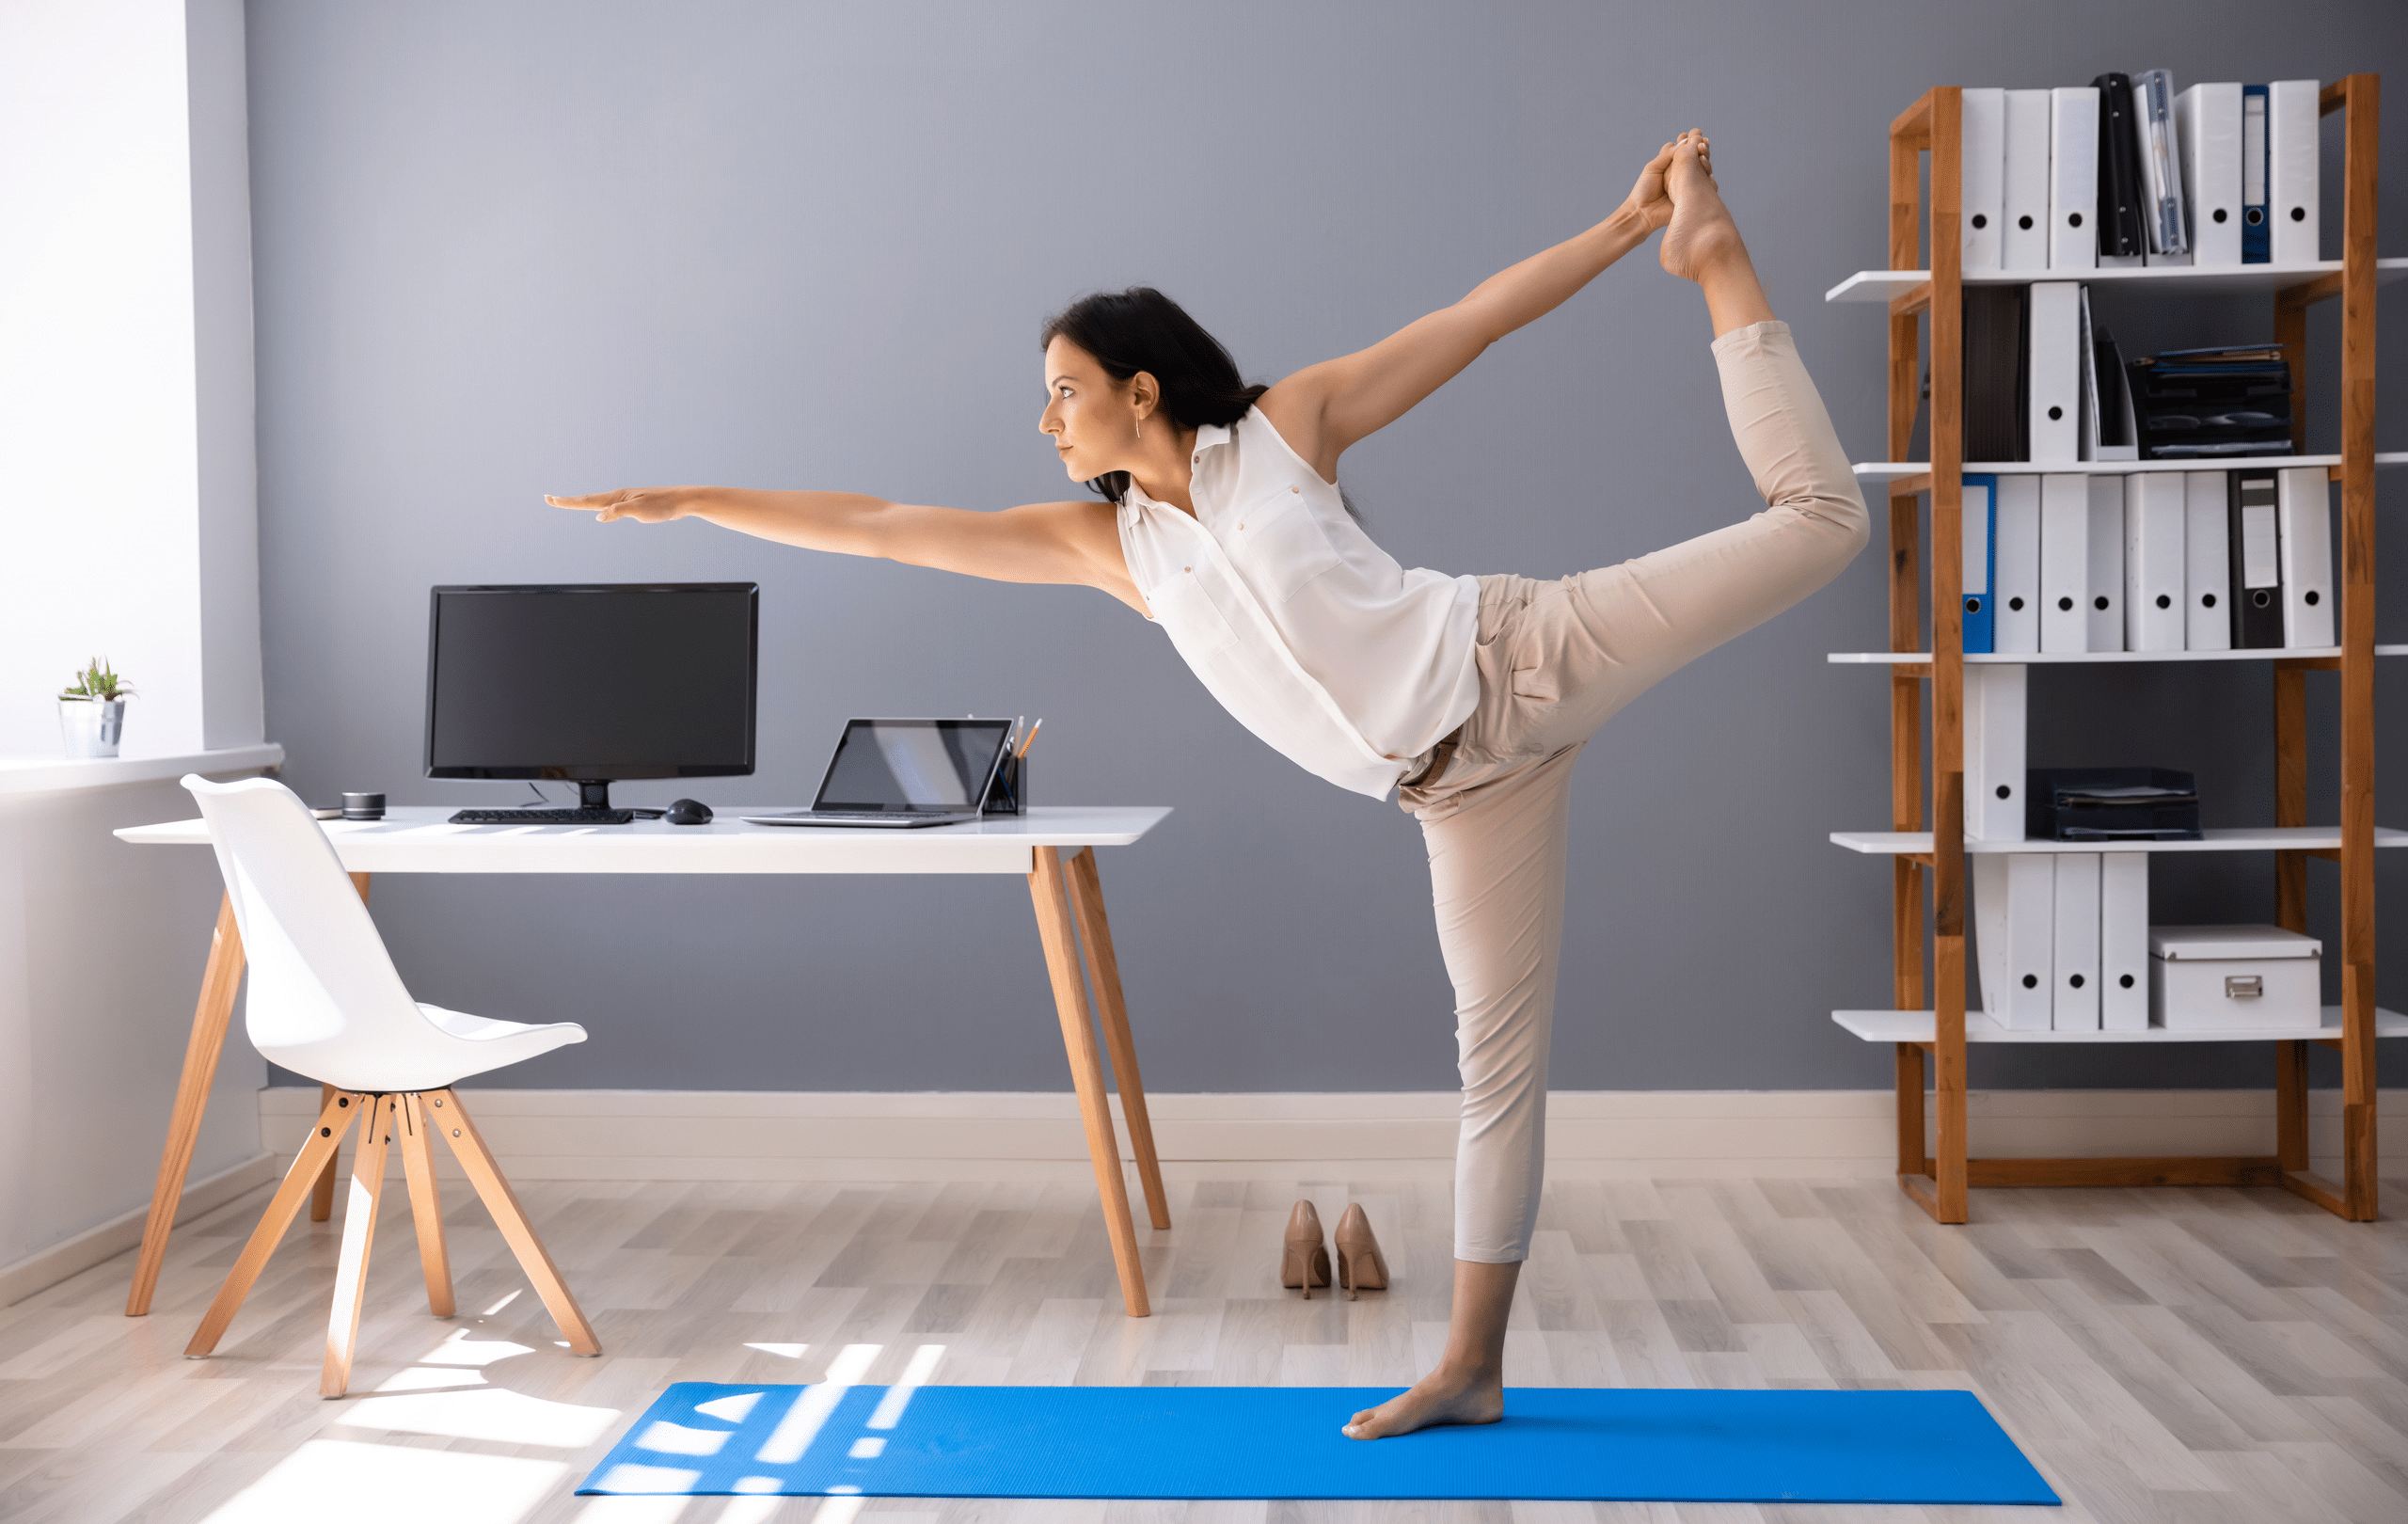 Frau beim Yoga im Homeoffice